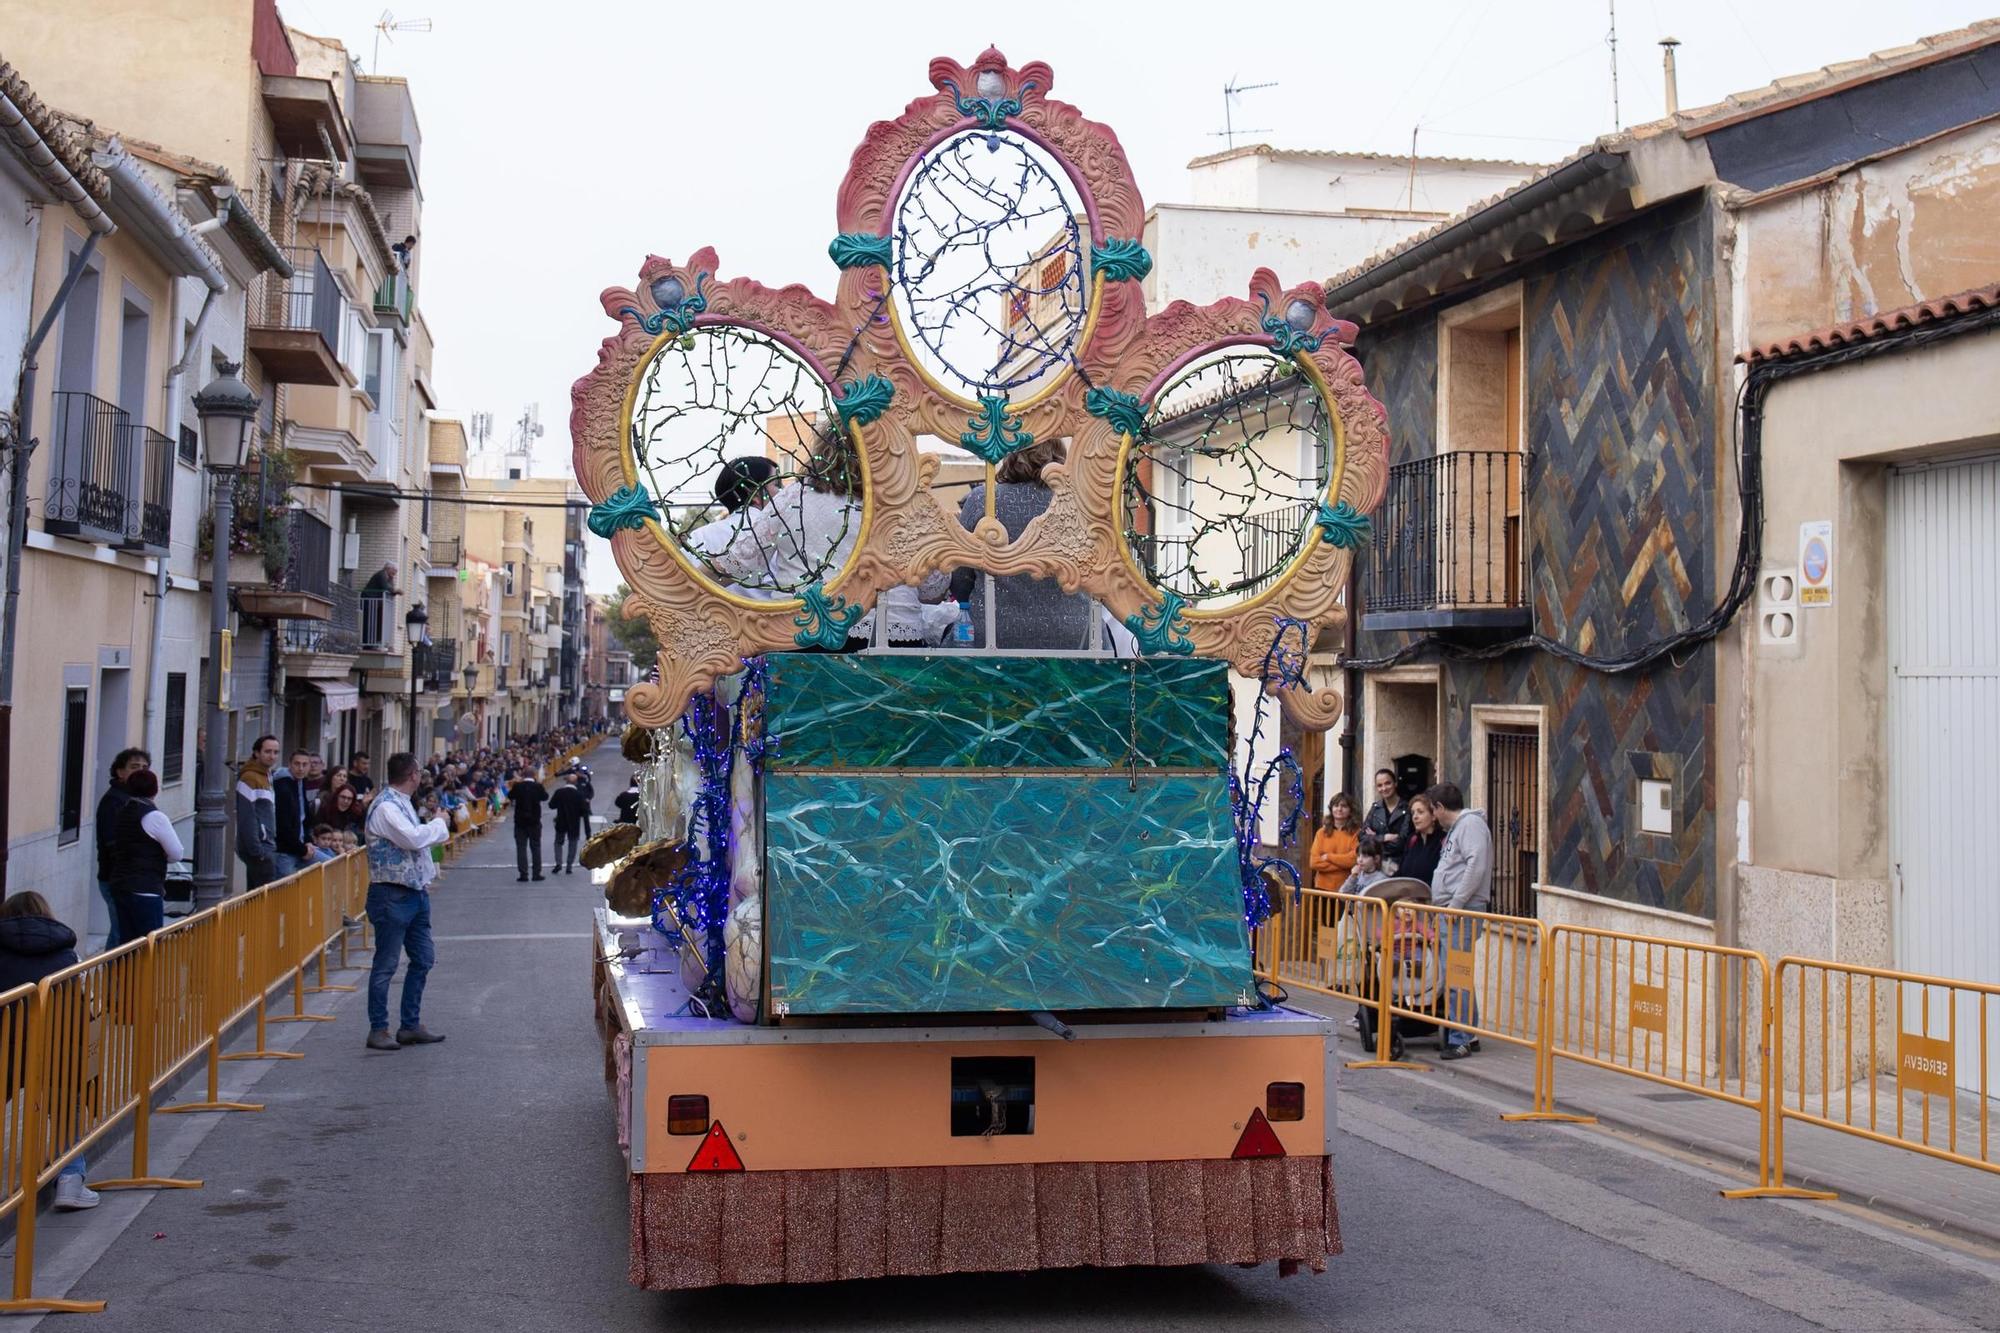 Cheste celebra su Cabalgata de San José, reconocida como Fiesta de Interés Turístico